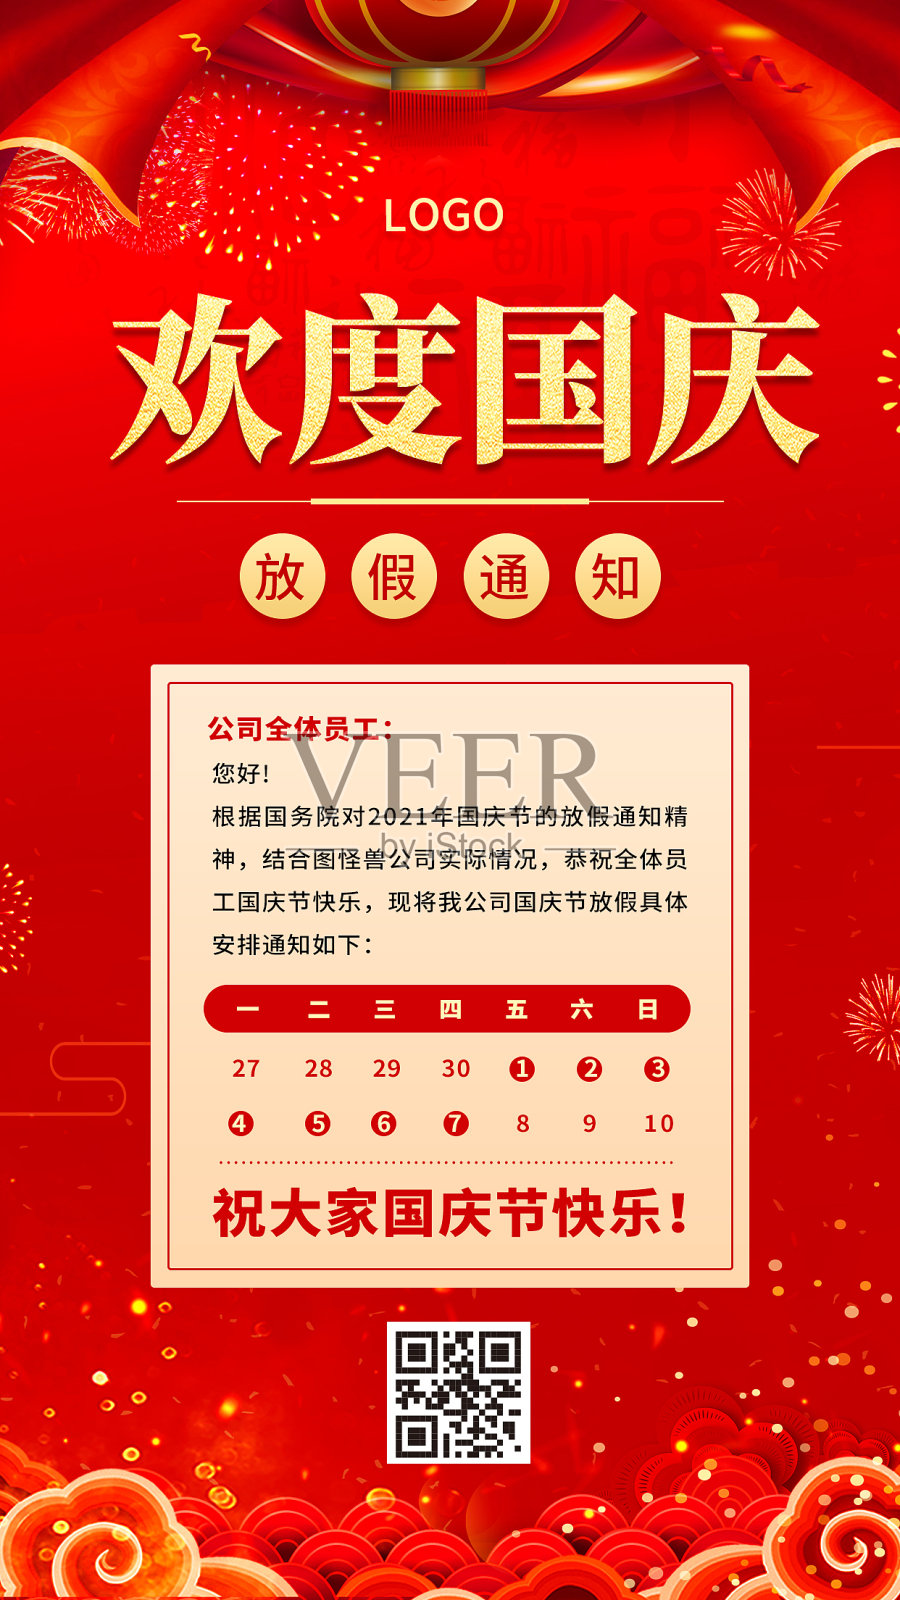 国庆节公司放假通知红色喜庆手机海报设计模板素材